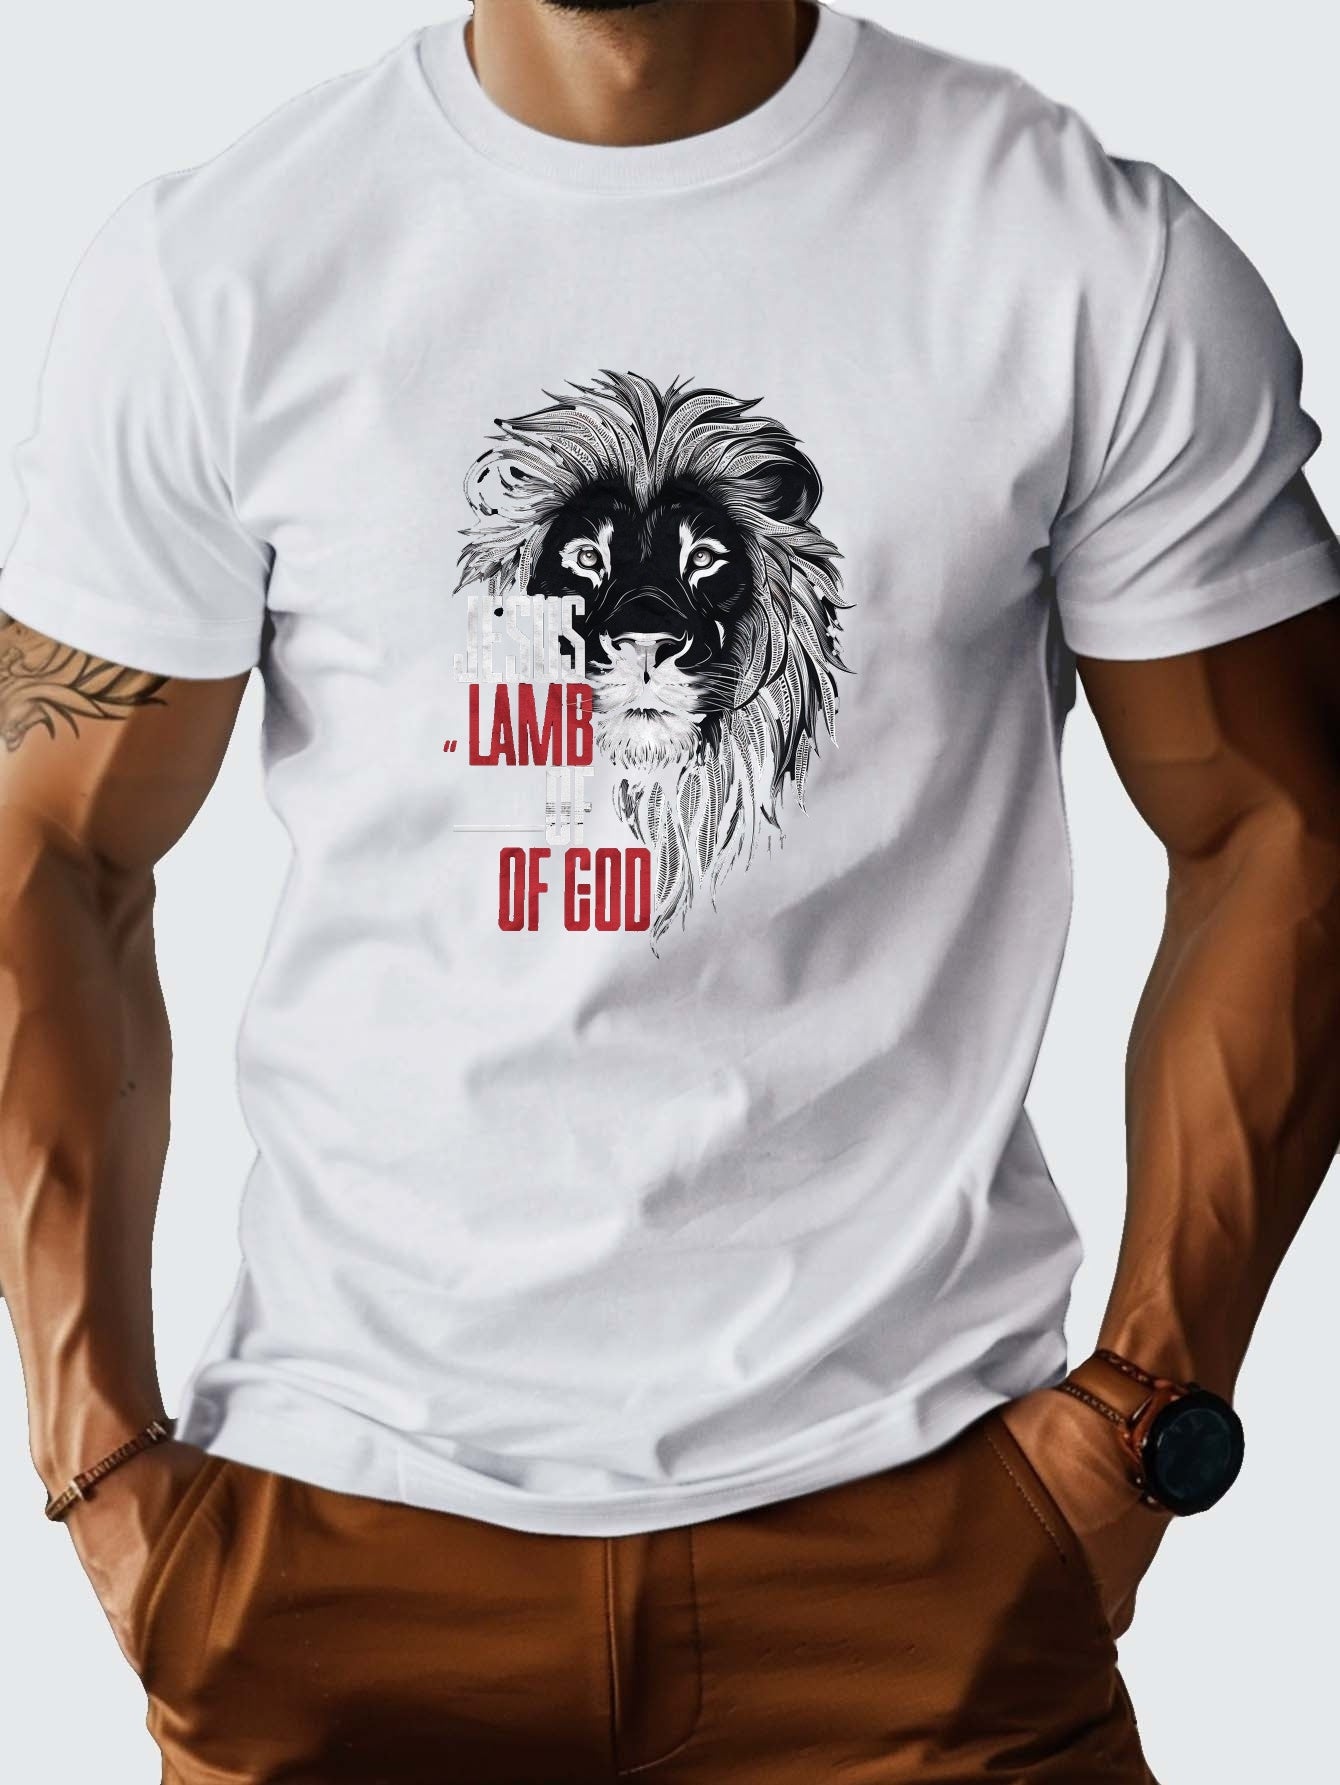 JESUS LAMB OF God Men's Christian T-shirt claimedbygoddesigns